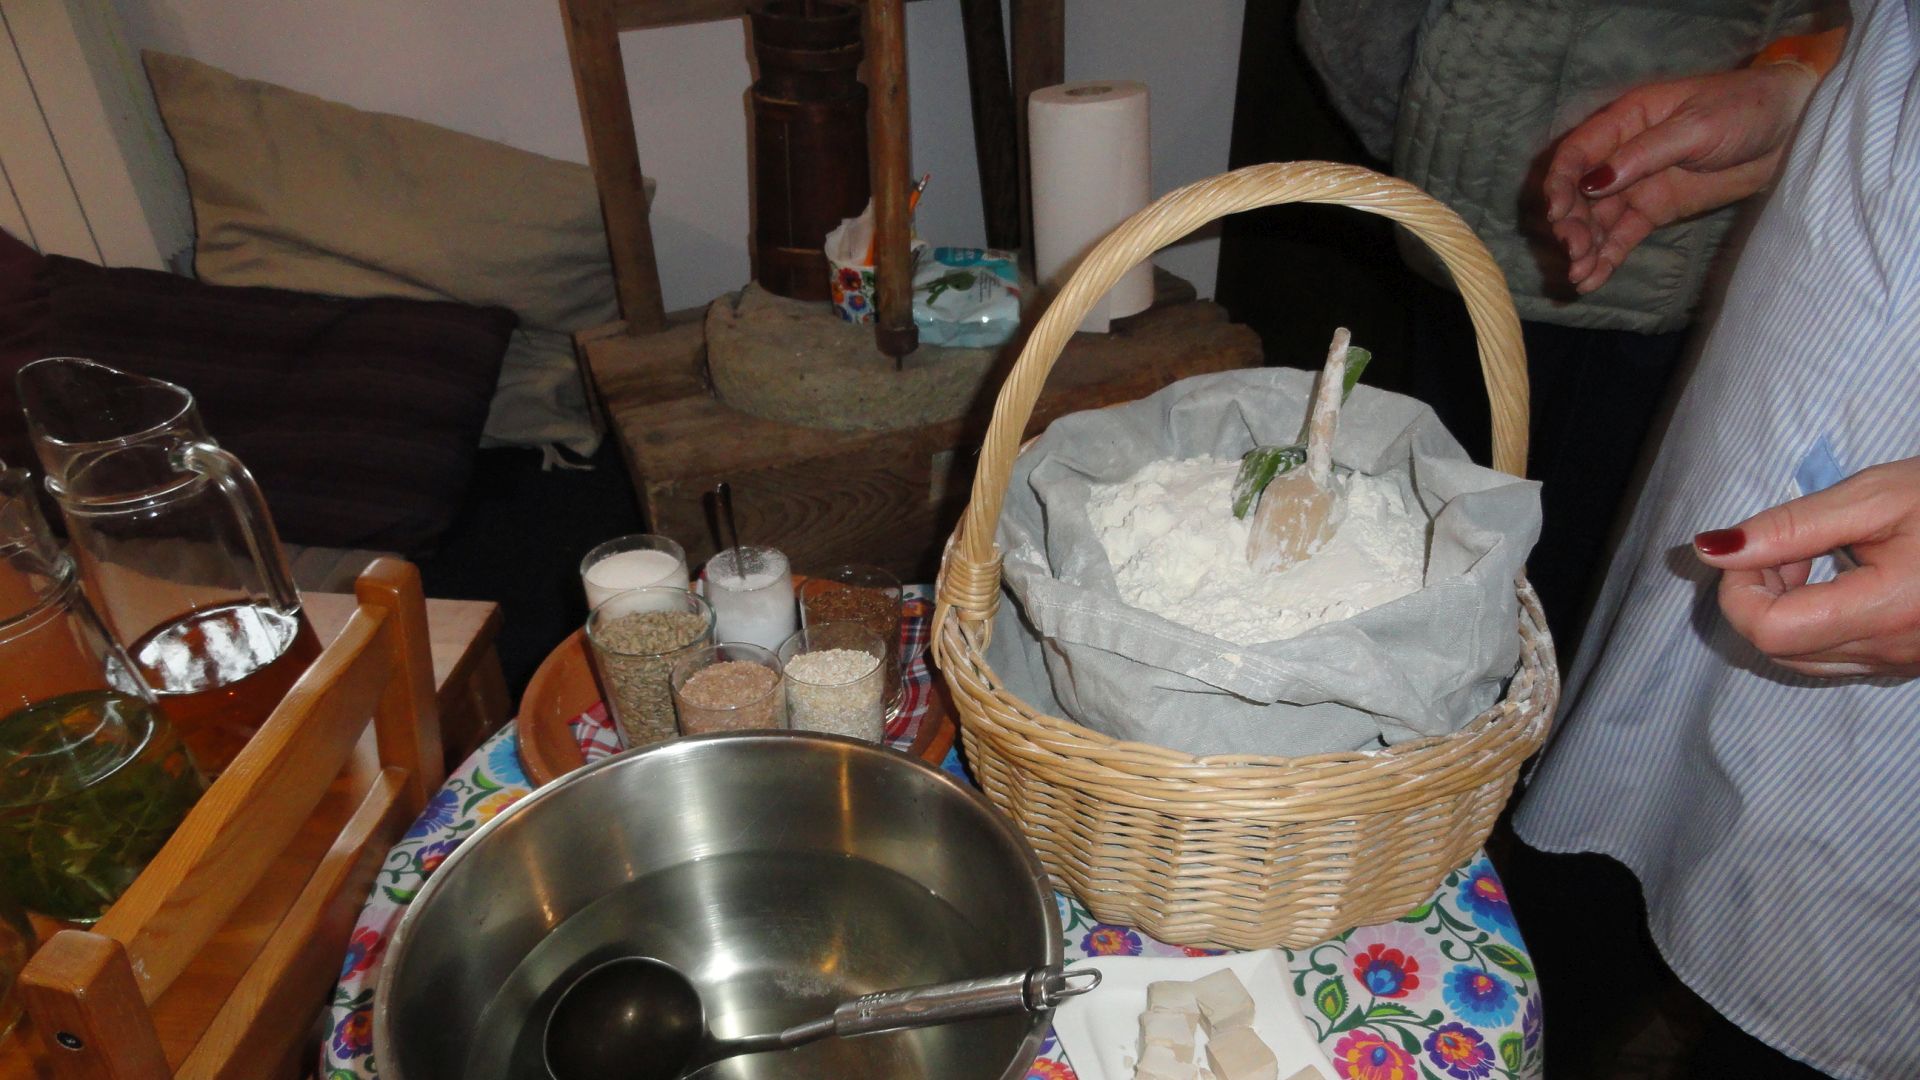 Stolik z produktami potrzebnymi do wypieku chleba: miska z wodą, kosz z workiem mąki, kostki drożdży, szklanki z ziarnami. 